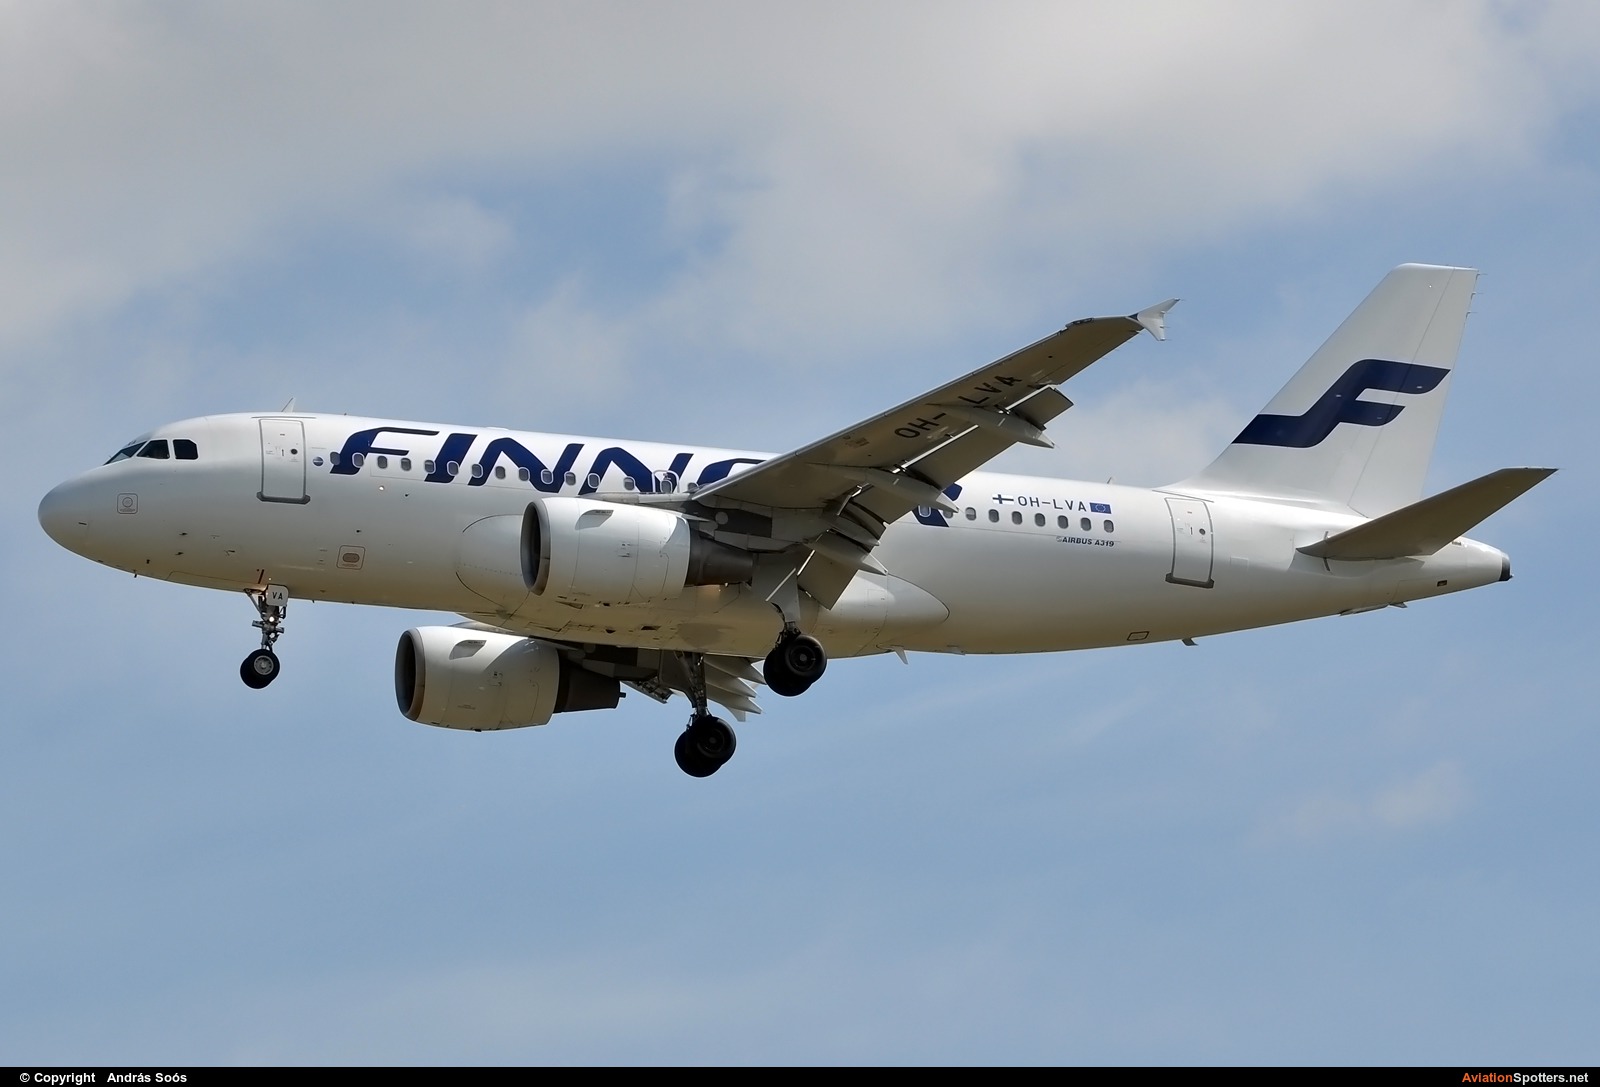 Finnair  -  A319  (OH-LVA) By András Soós (sas1965)